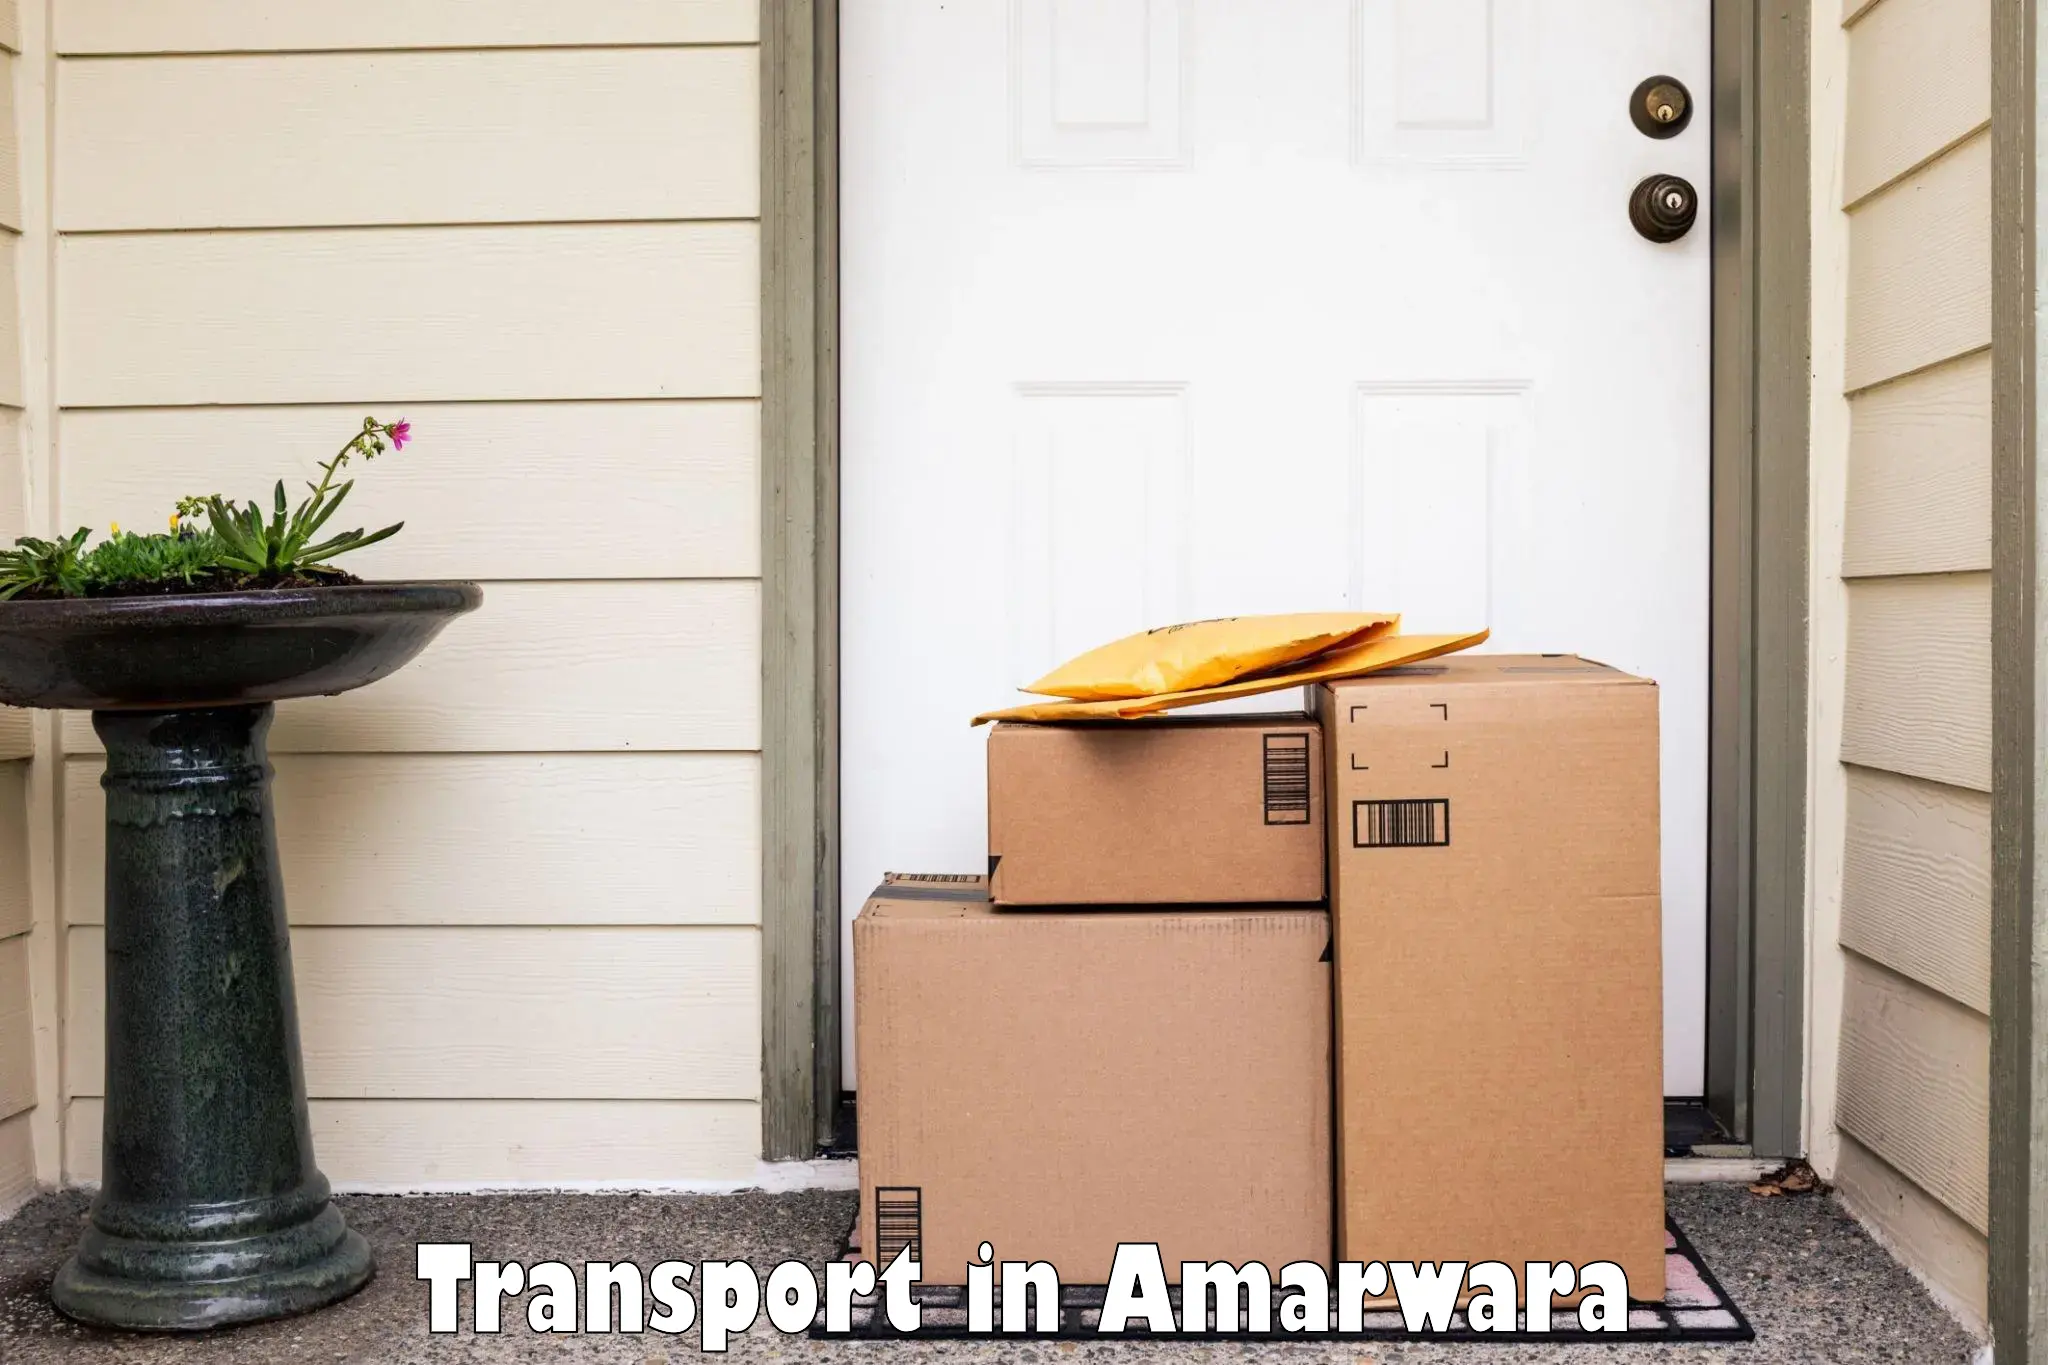 Cargo transport services in Amarwara